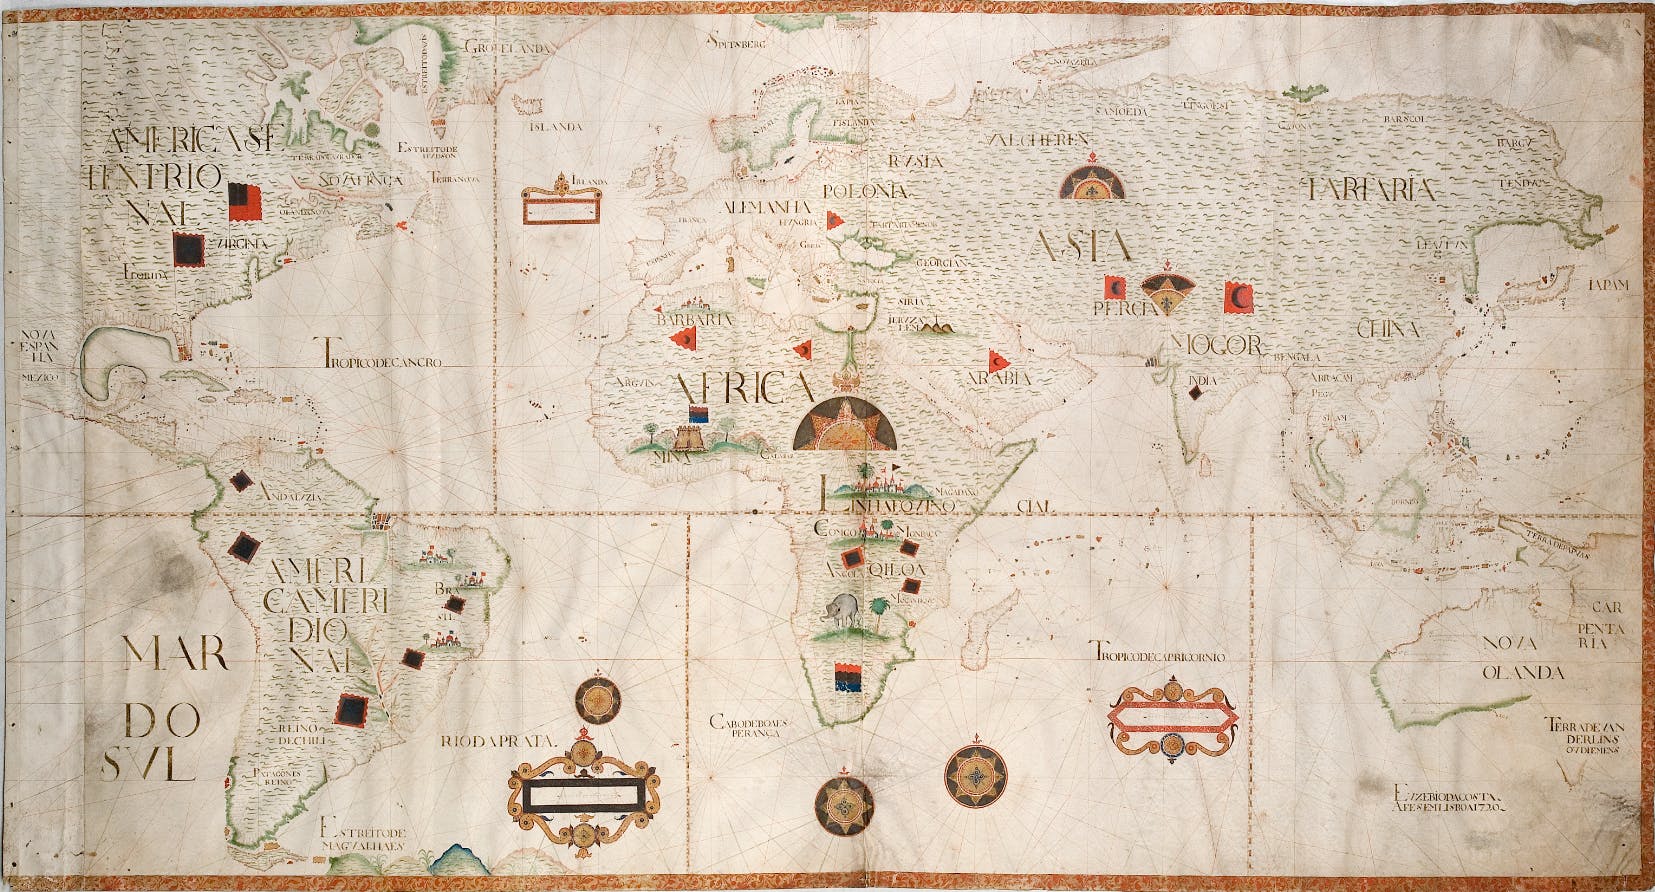 Mapa Mundi (1720), par Eusébio da Costa, cartographe - Museu da Marinha, Lisbonne